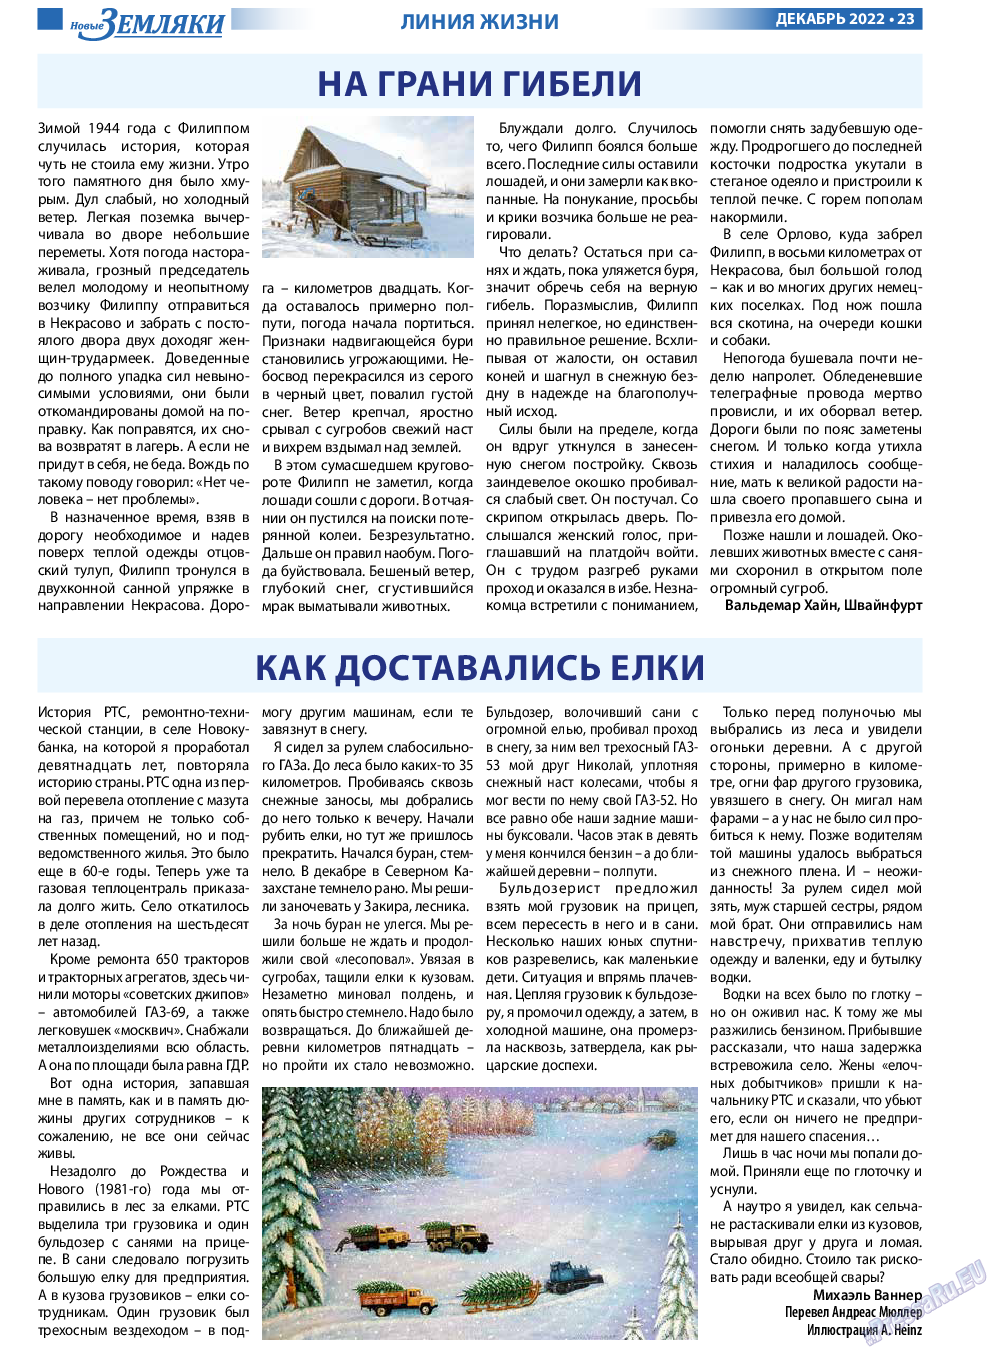 Новые Земляки, газета. 2022 №12 стр.23